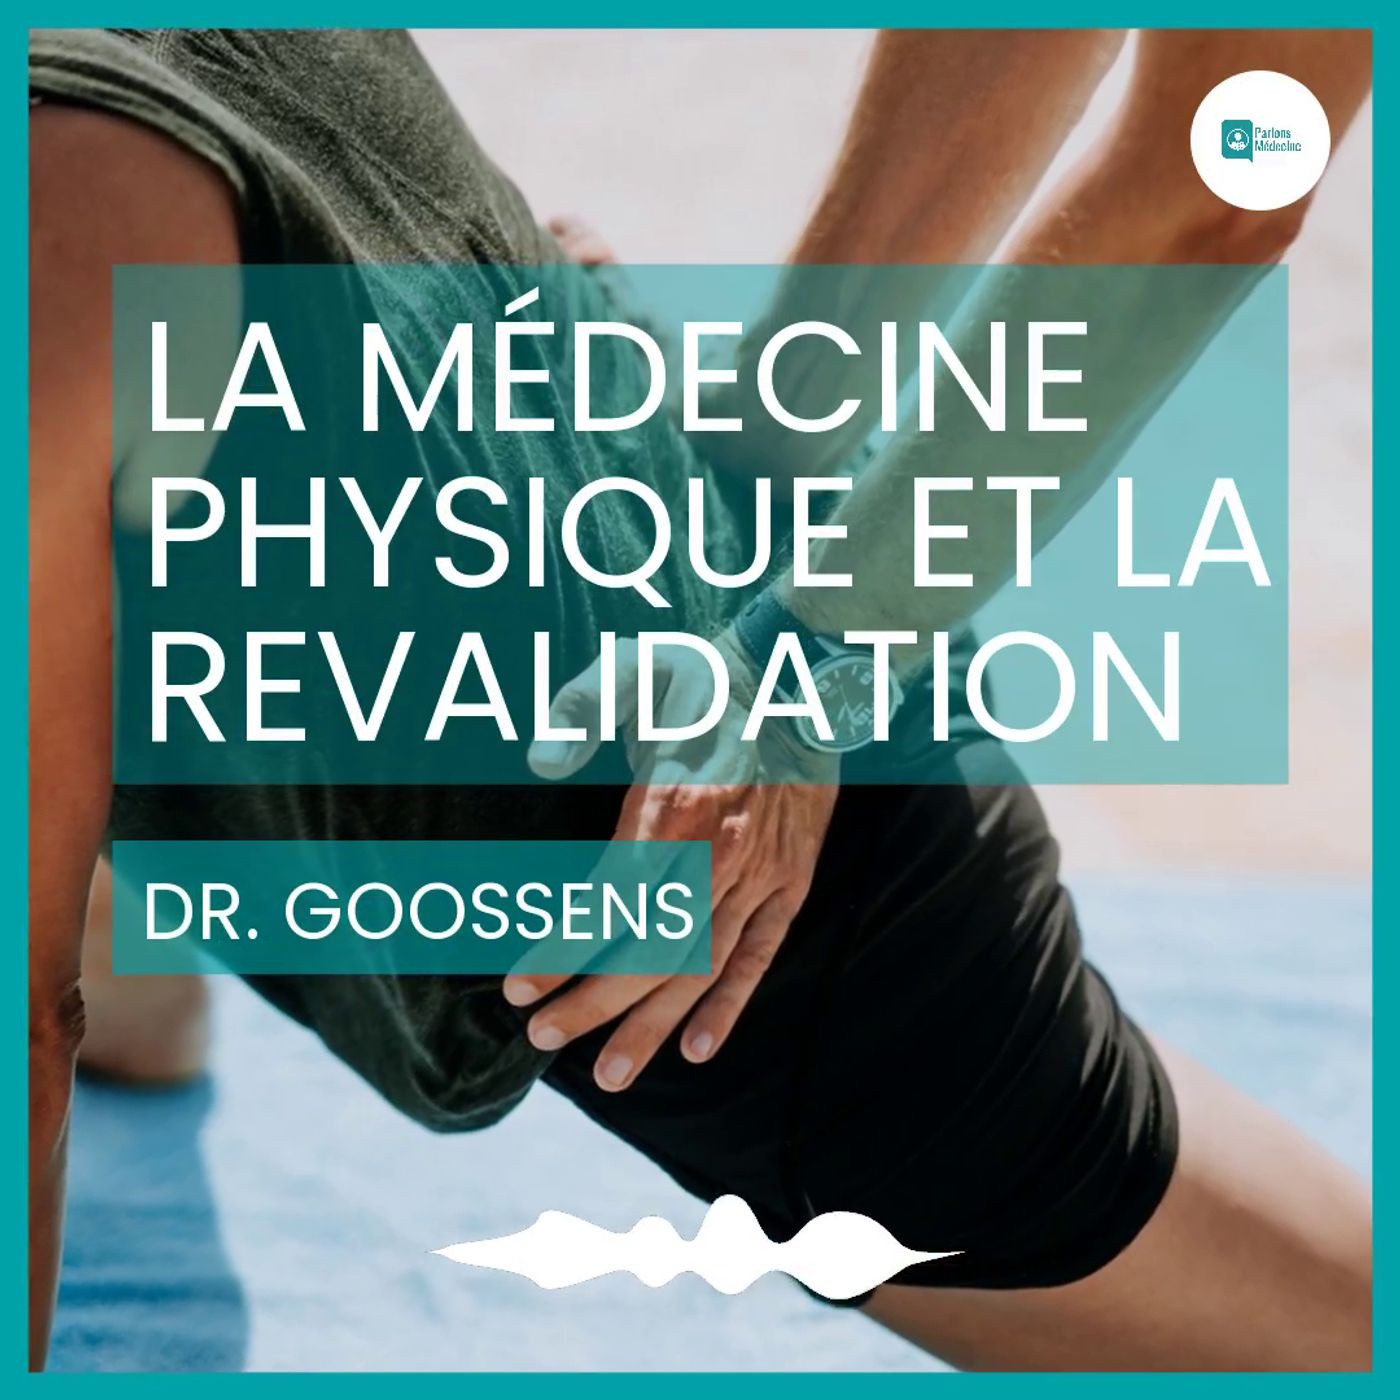 La médecine physique et la revalidation Dr. Goossens